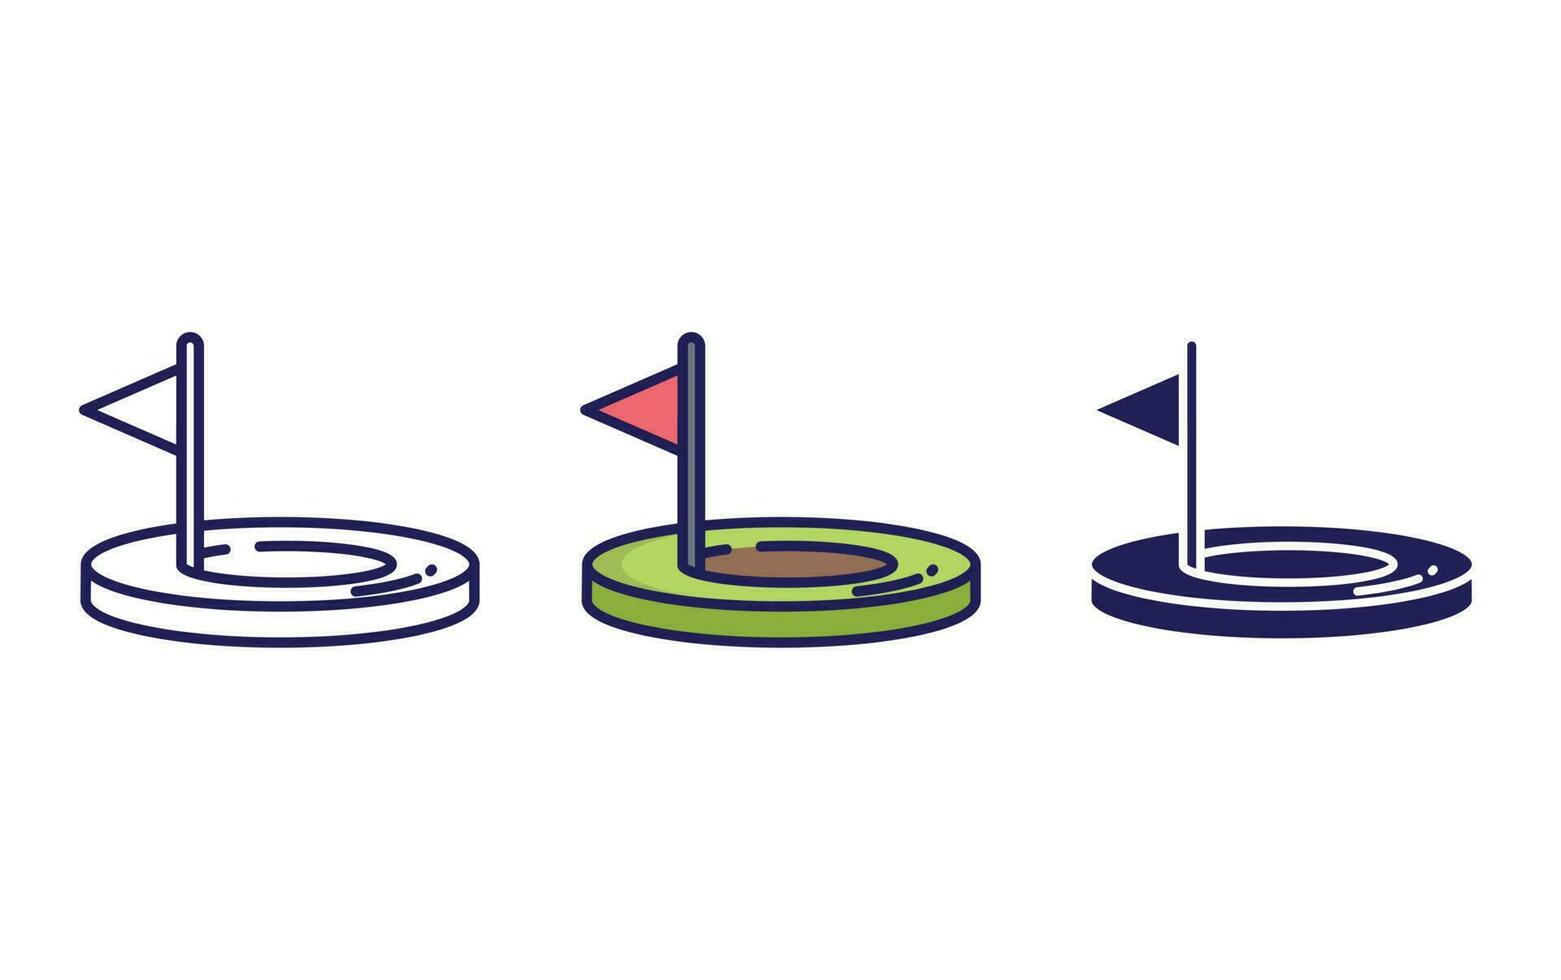 Golf vector icon